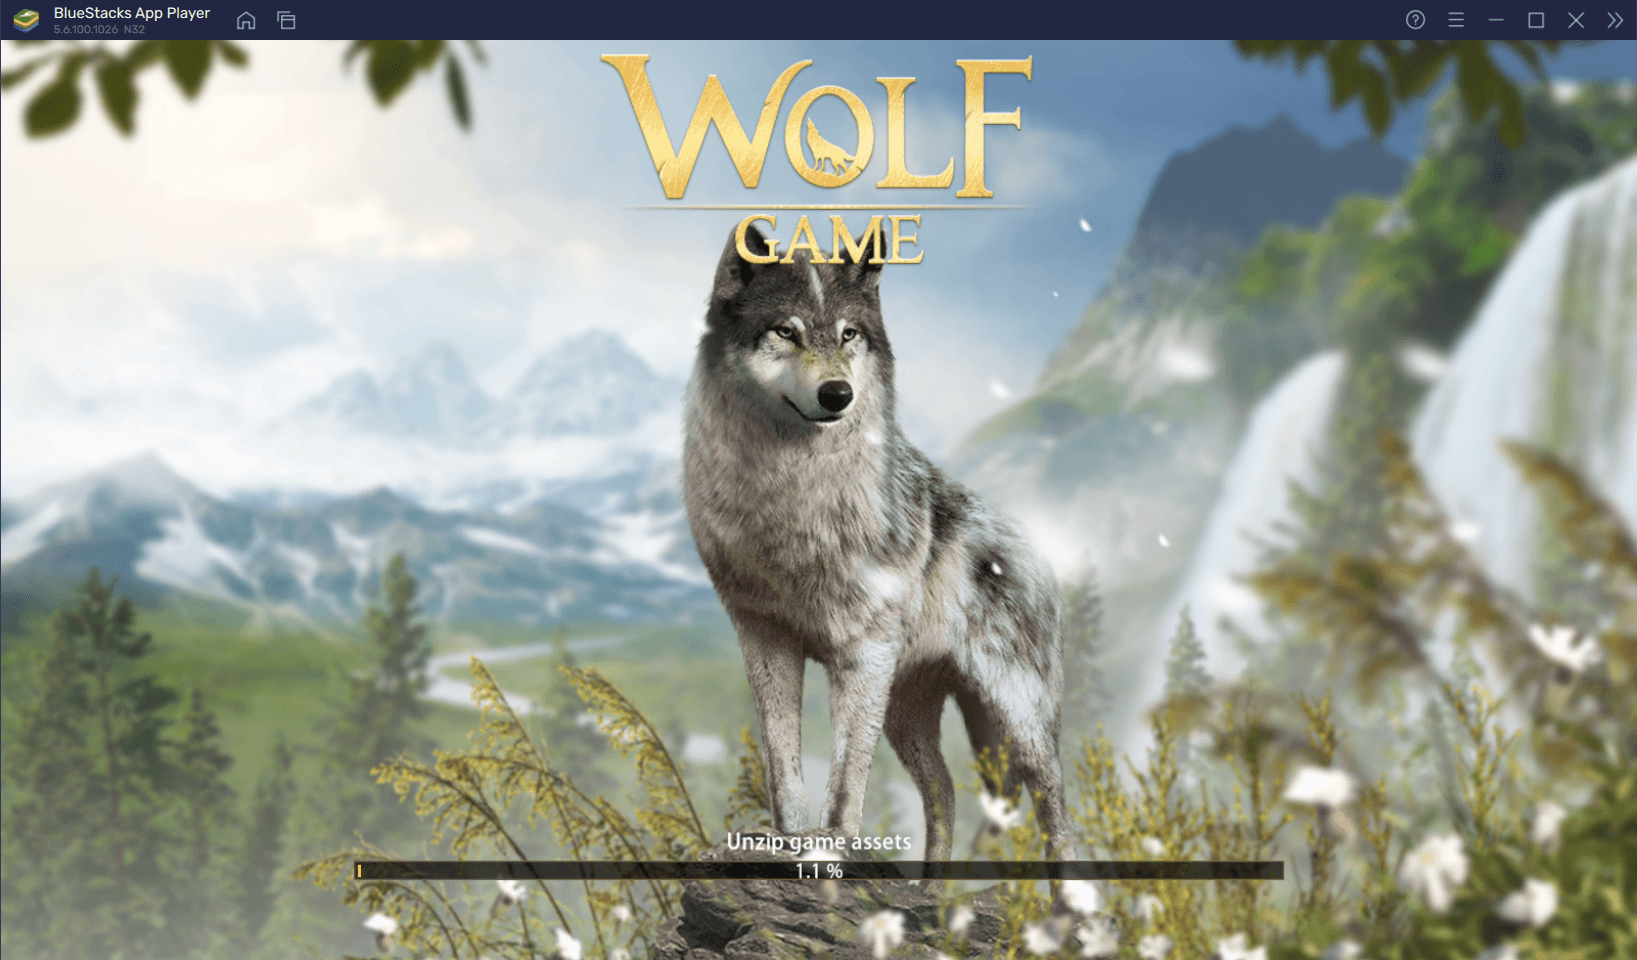 Cara Mudah Memainkan Wolf Game: Kingdom Animal Wars di PC Dengan BlueStacks